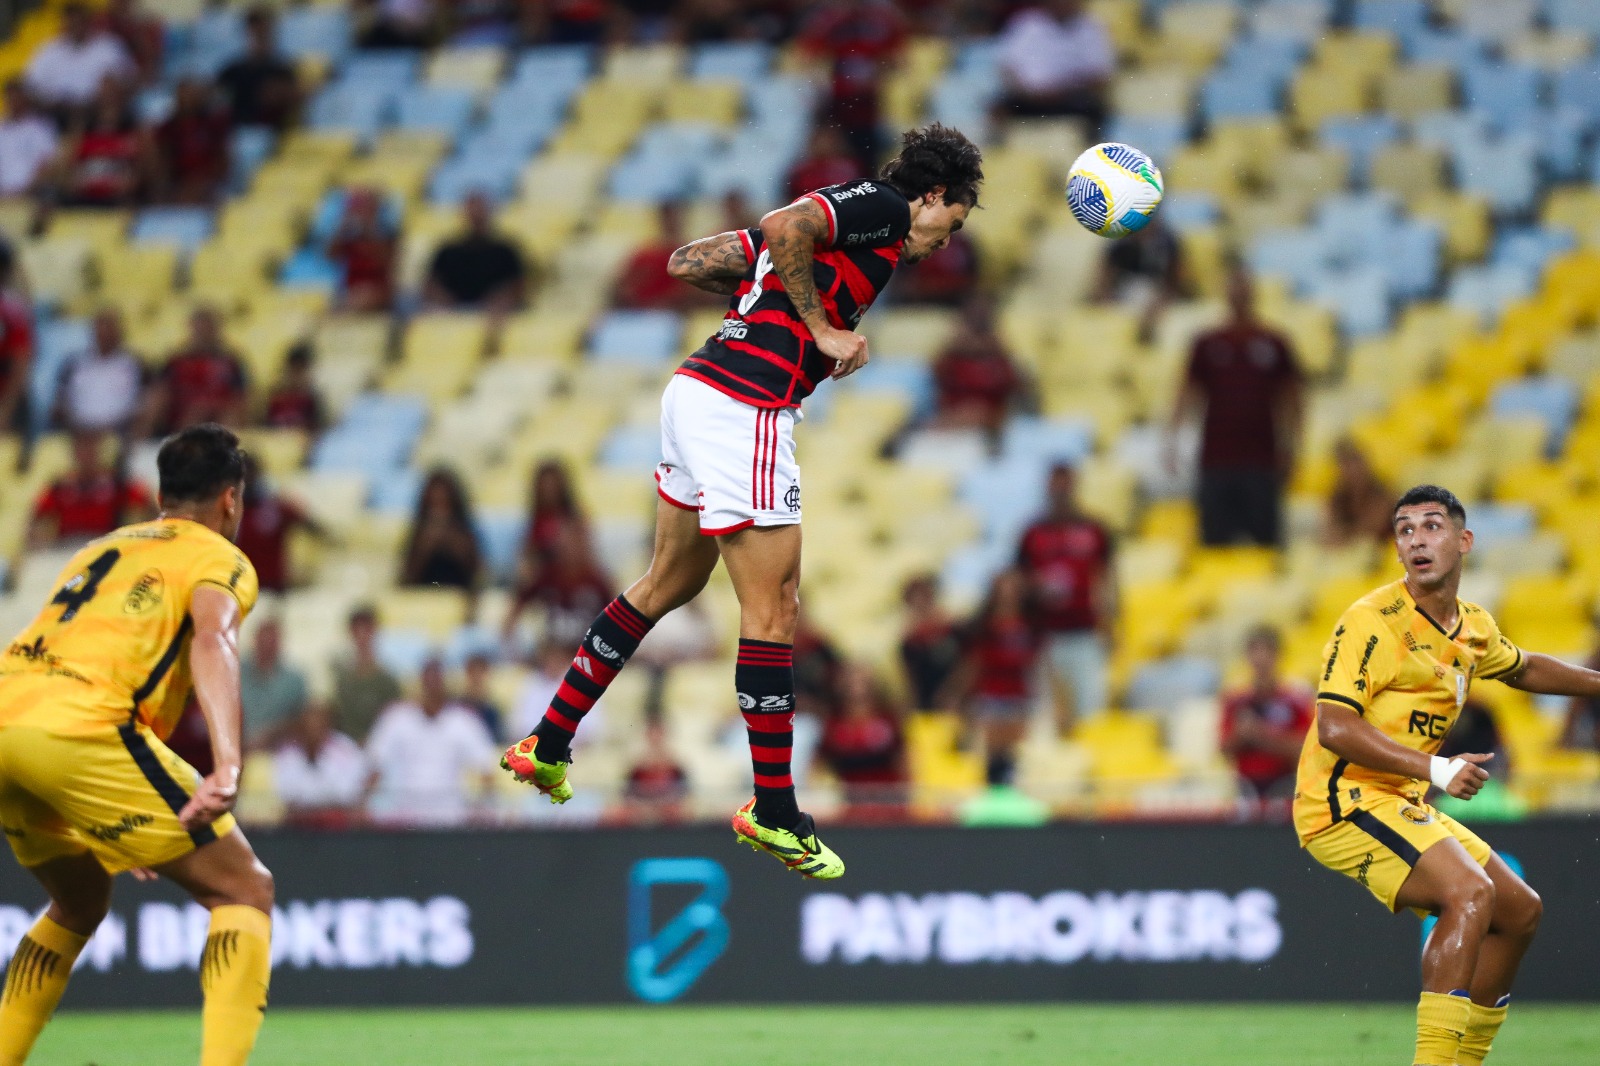 AO VIVO: Flamengo x Amazonas pela terceira fase da Copa do Brasil